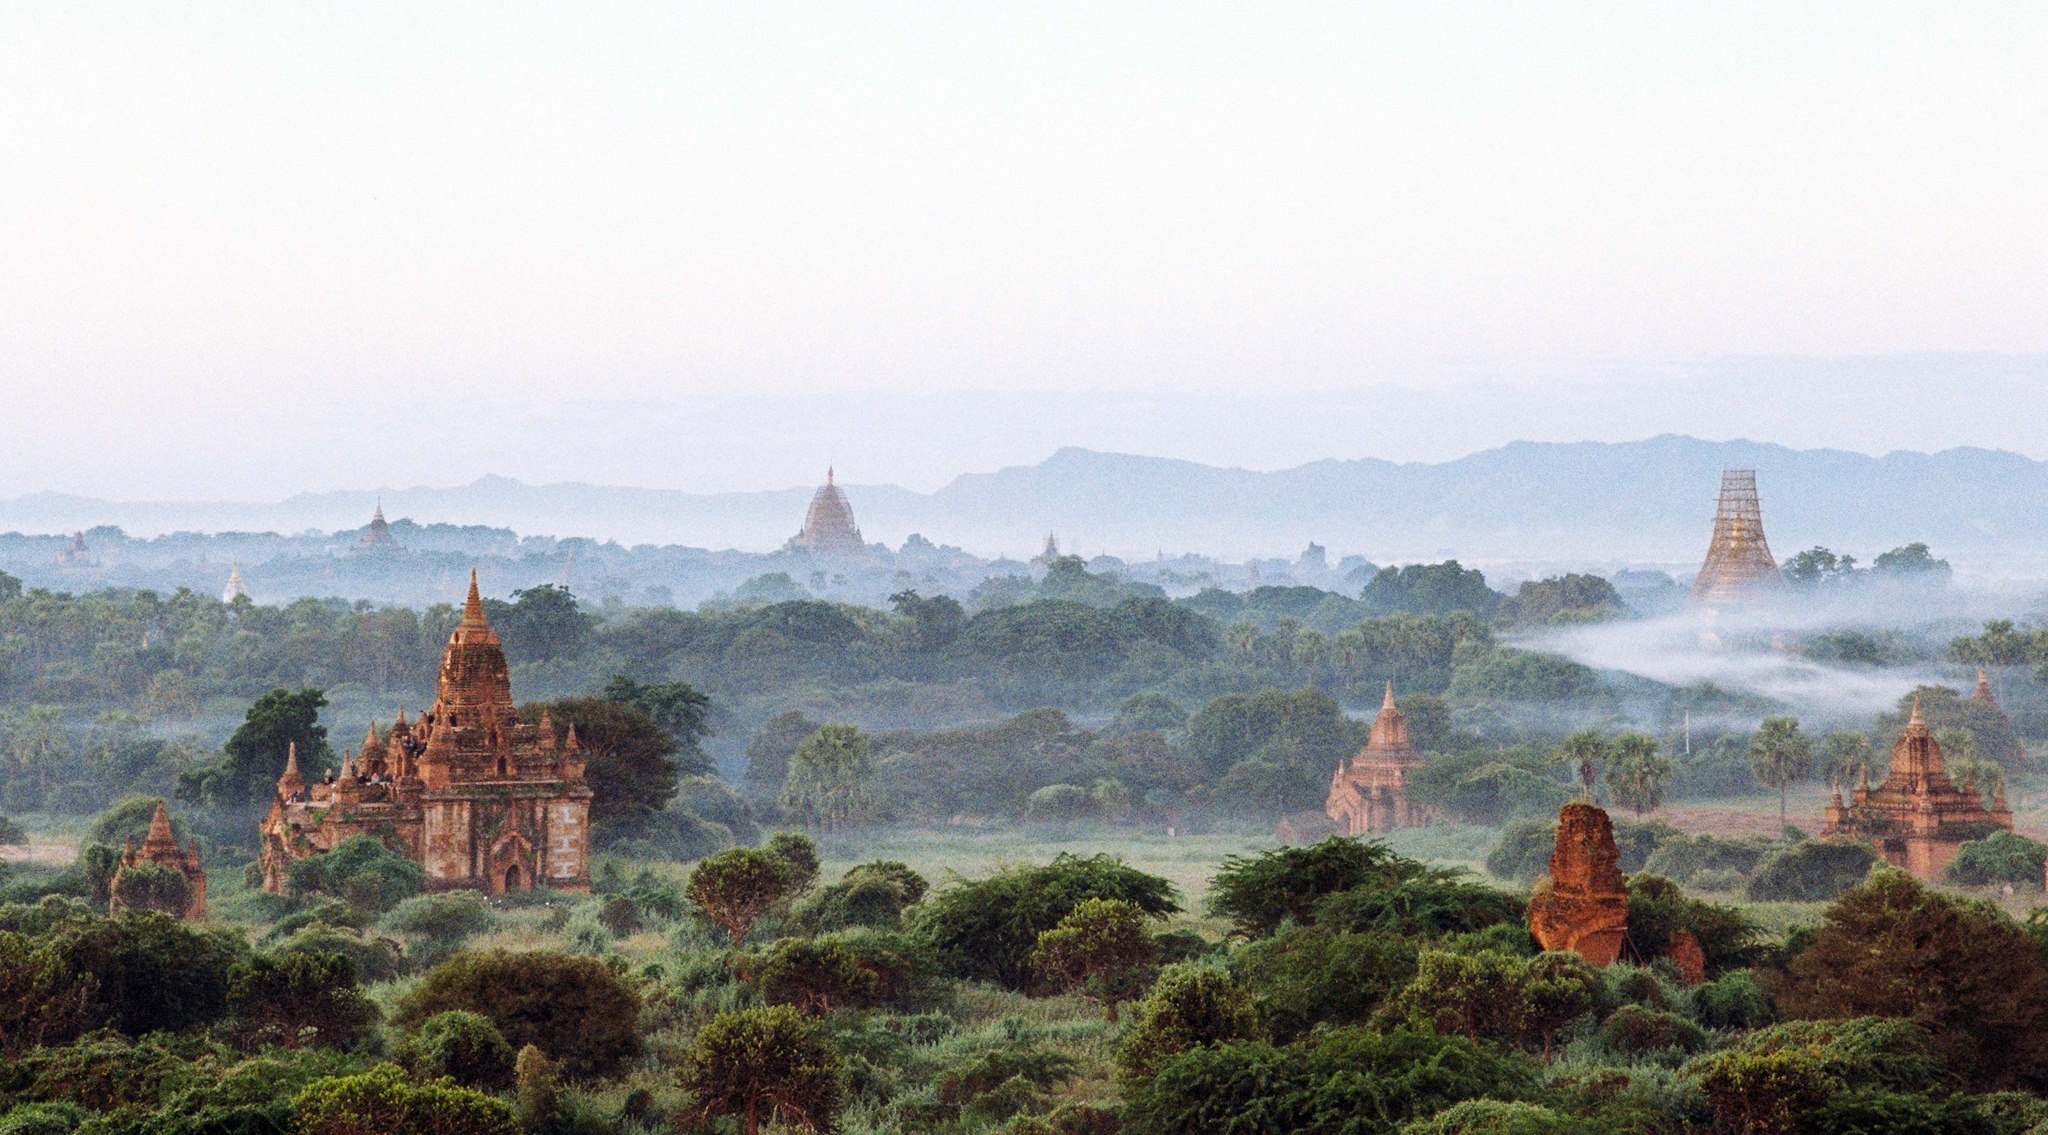 Kinh nghiem du lich Bagan anh 2